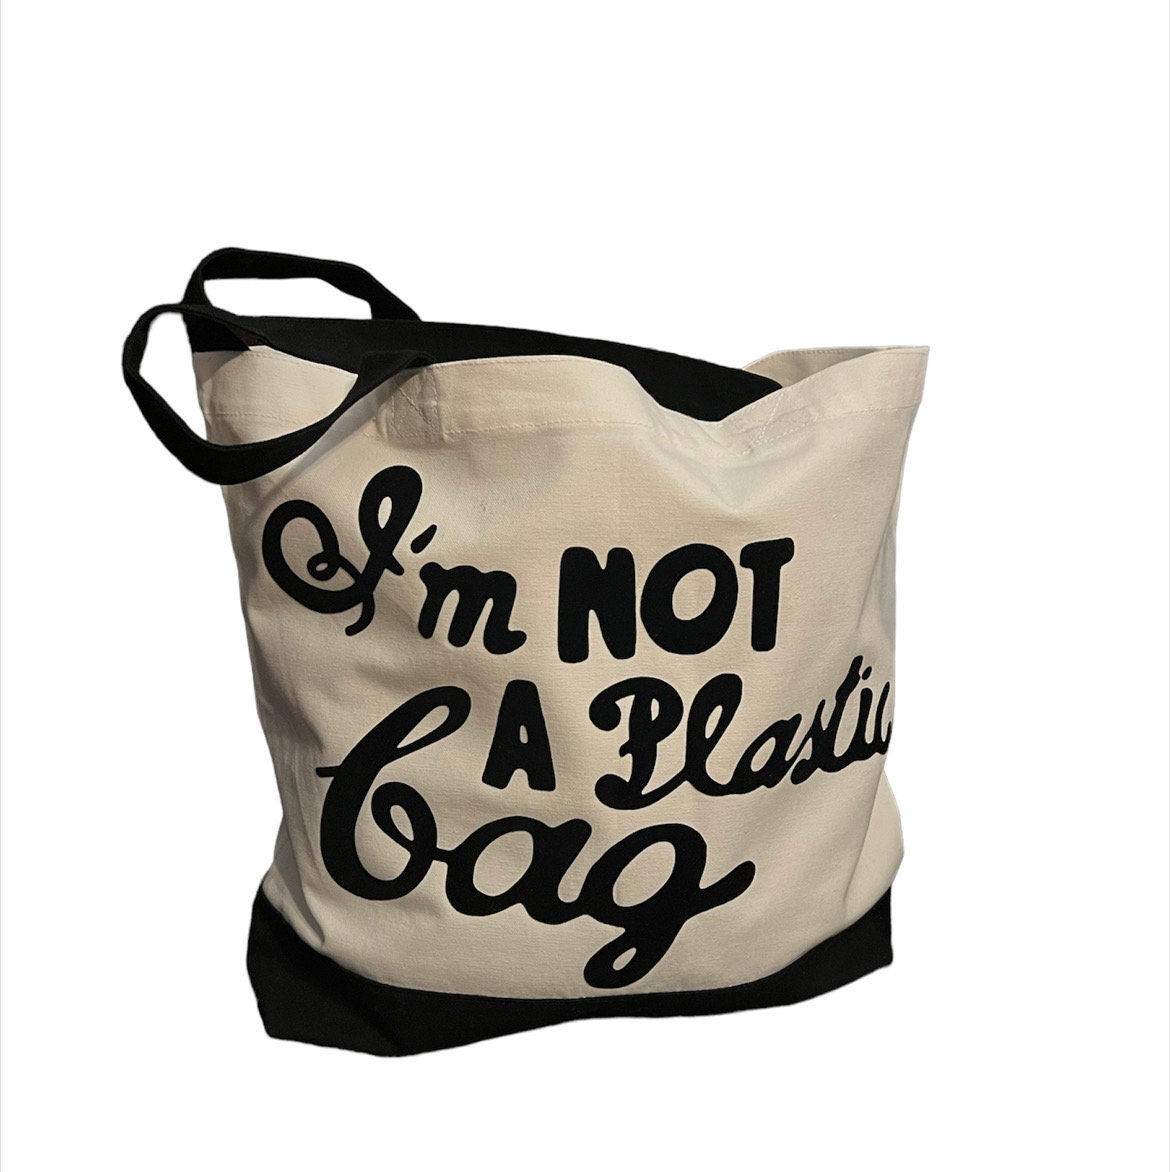 Channel  Plastic handbag, Bags, Chanel bag